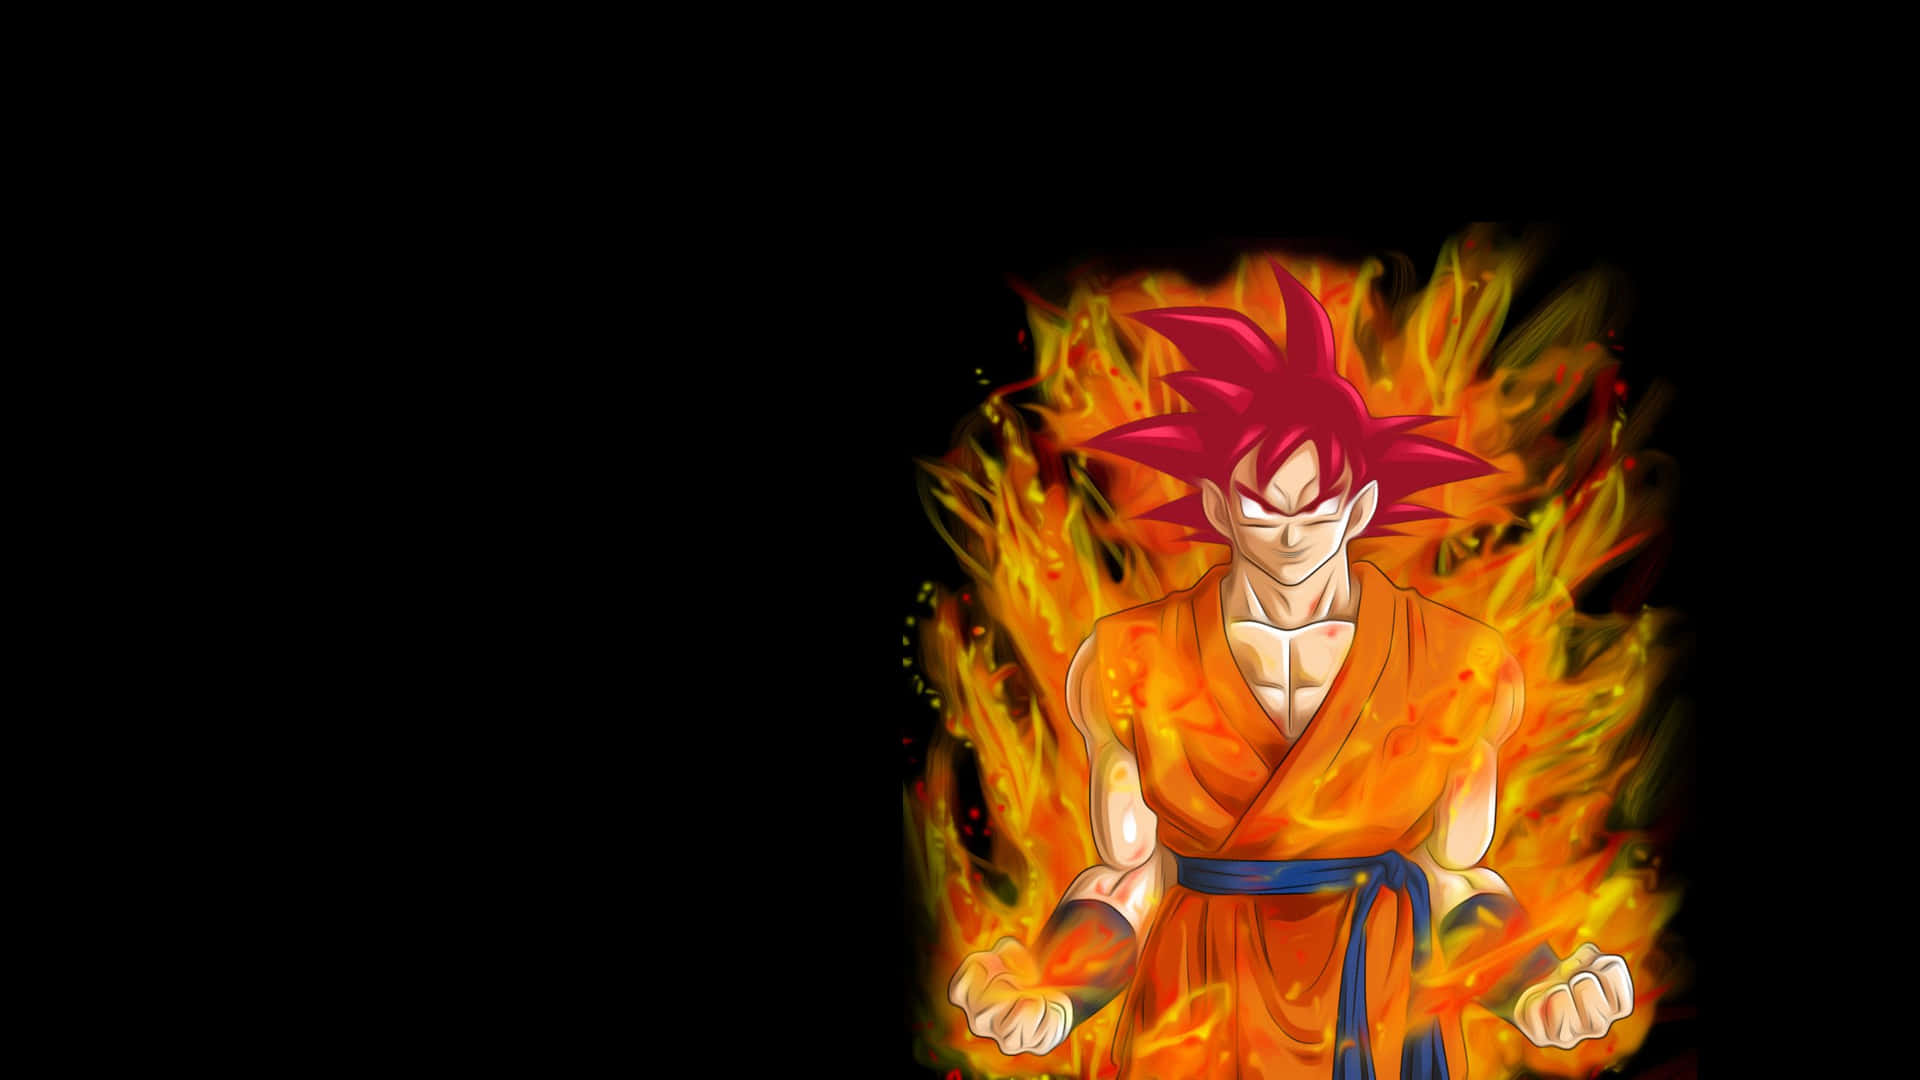 Imagende Goku En Su Nivel Super Saiyan Dios